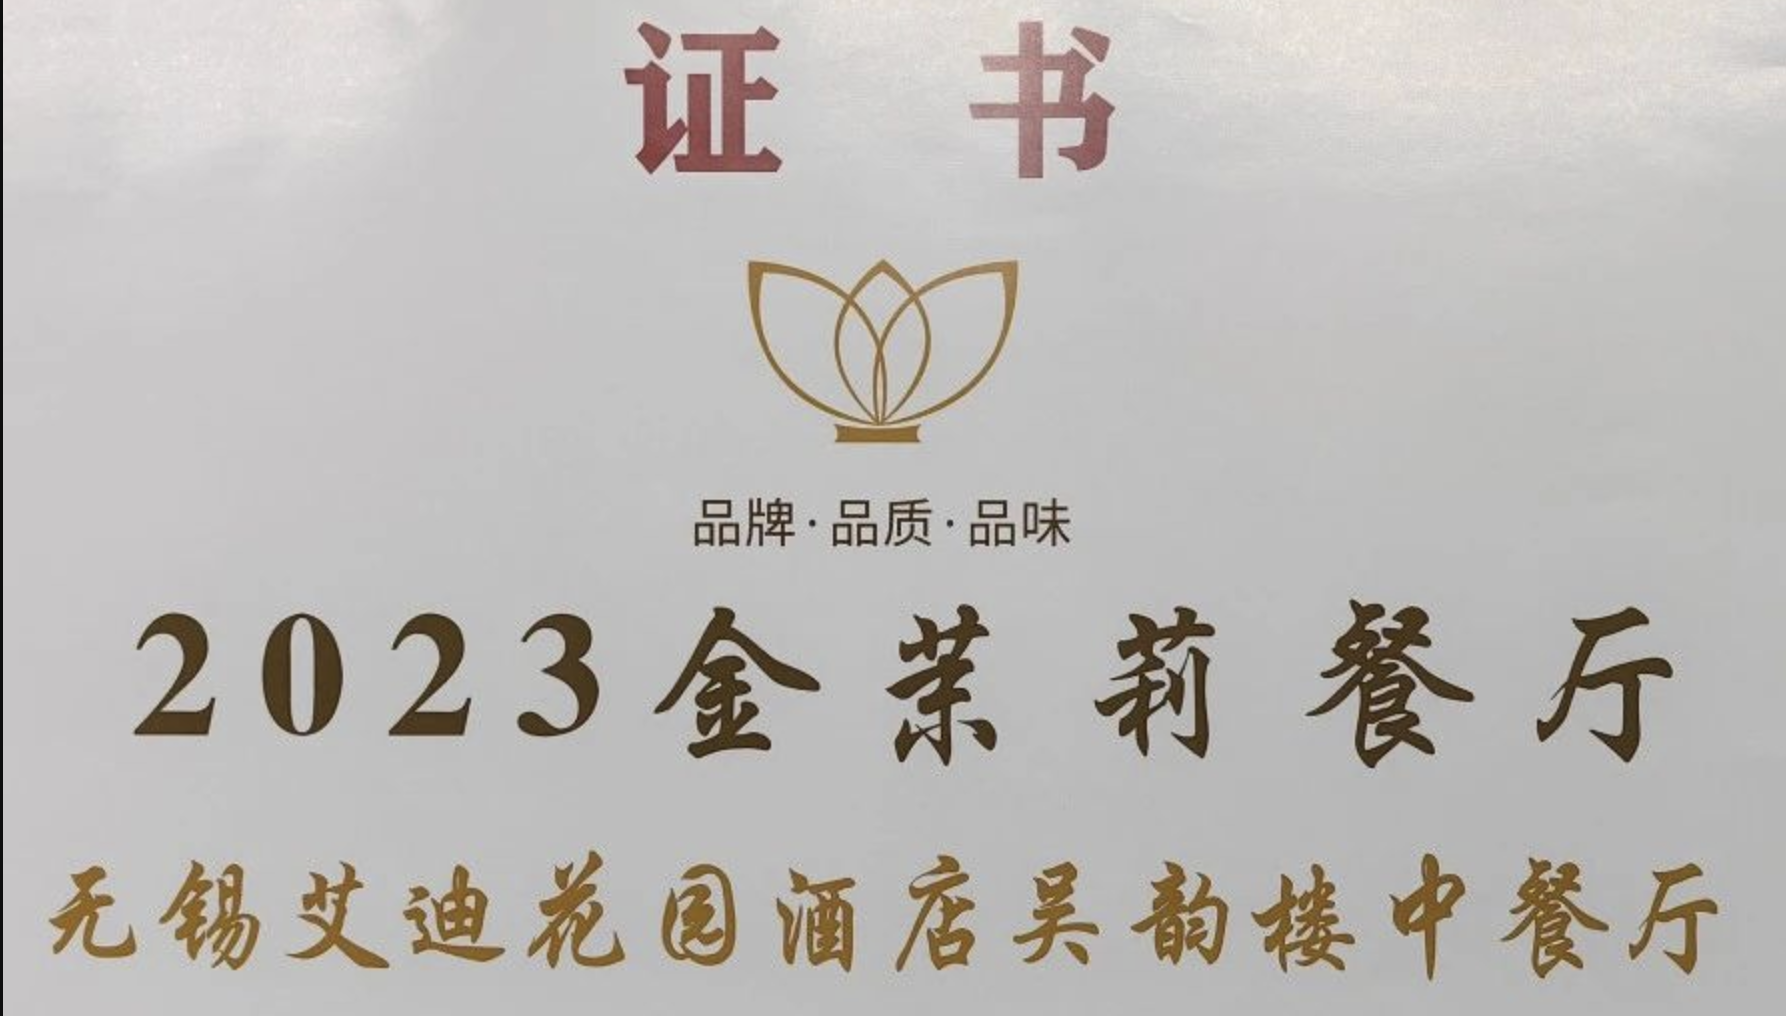 喜讯 | 无锡艾迪花园酒店吴韵楼中餐厅获评星级酒店“2023金茉莉餐厅”荣誉称号！